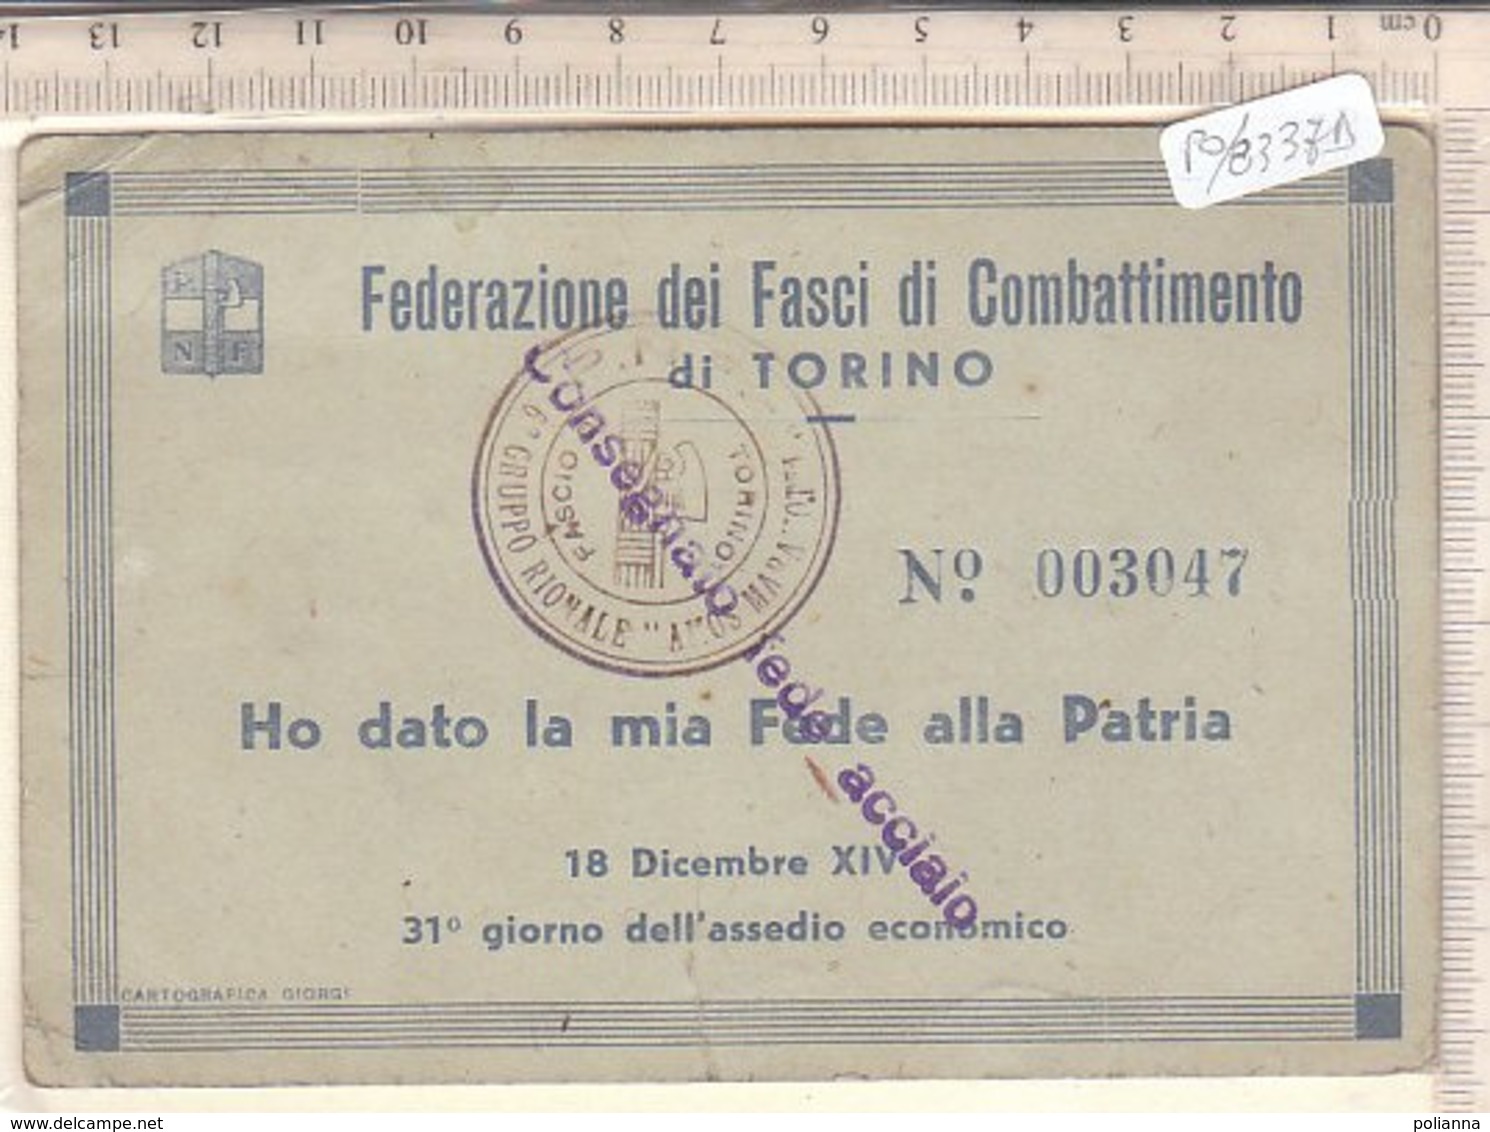 PO8337D# TESSERA FEDERAZIONE FASCI DI COMBATTIMENTO DI TORINO - CONSEGNATO FEDE ACCIAIO 1935 - MILITARI - Documenti